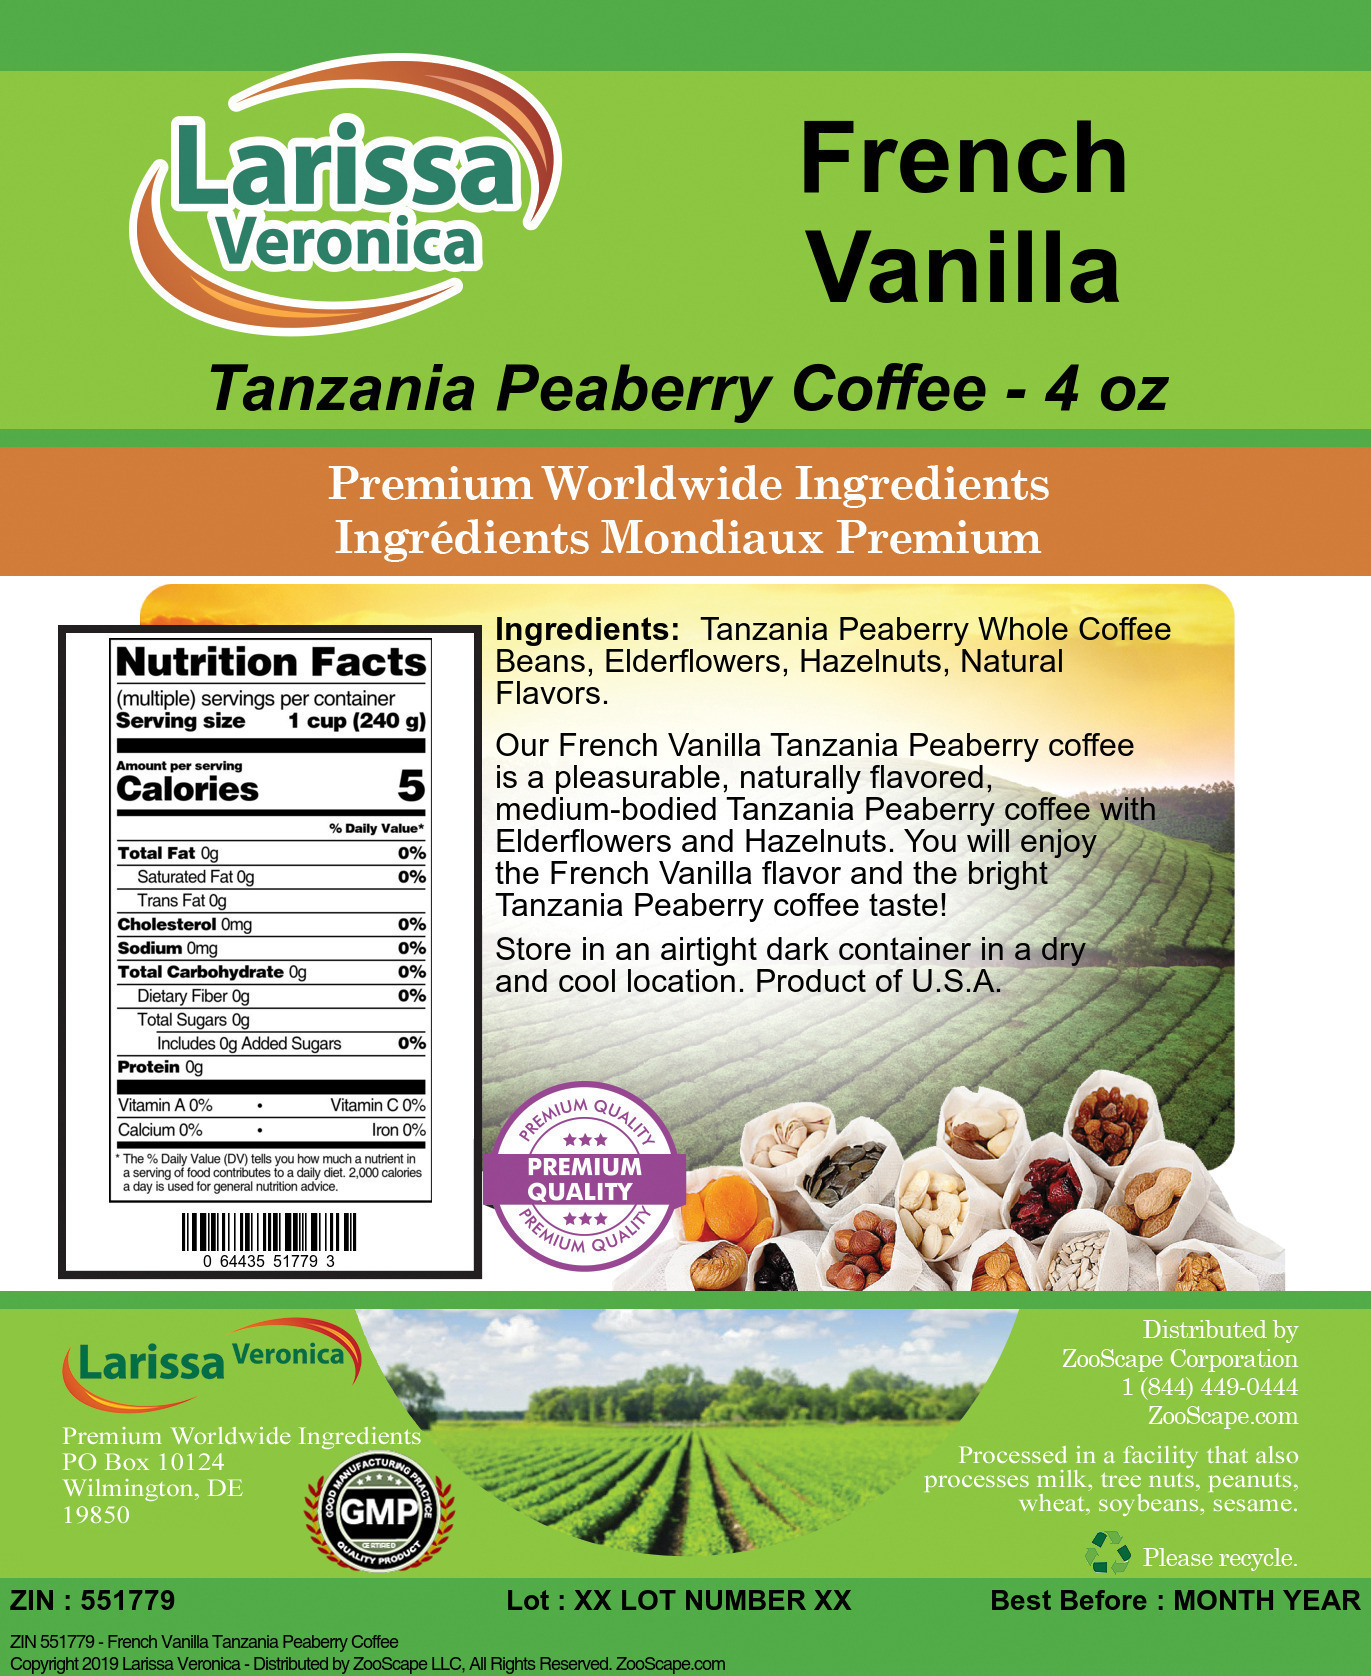 French Vanilla Tanzania Peaberry Coffee - Label